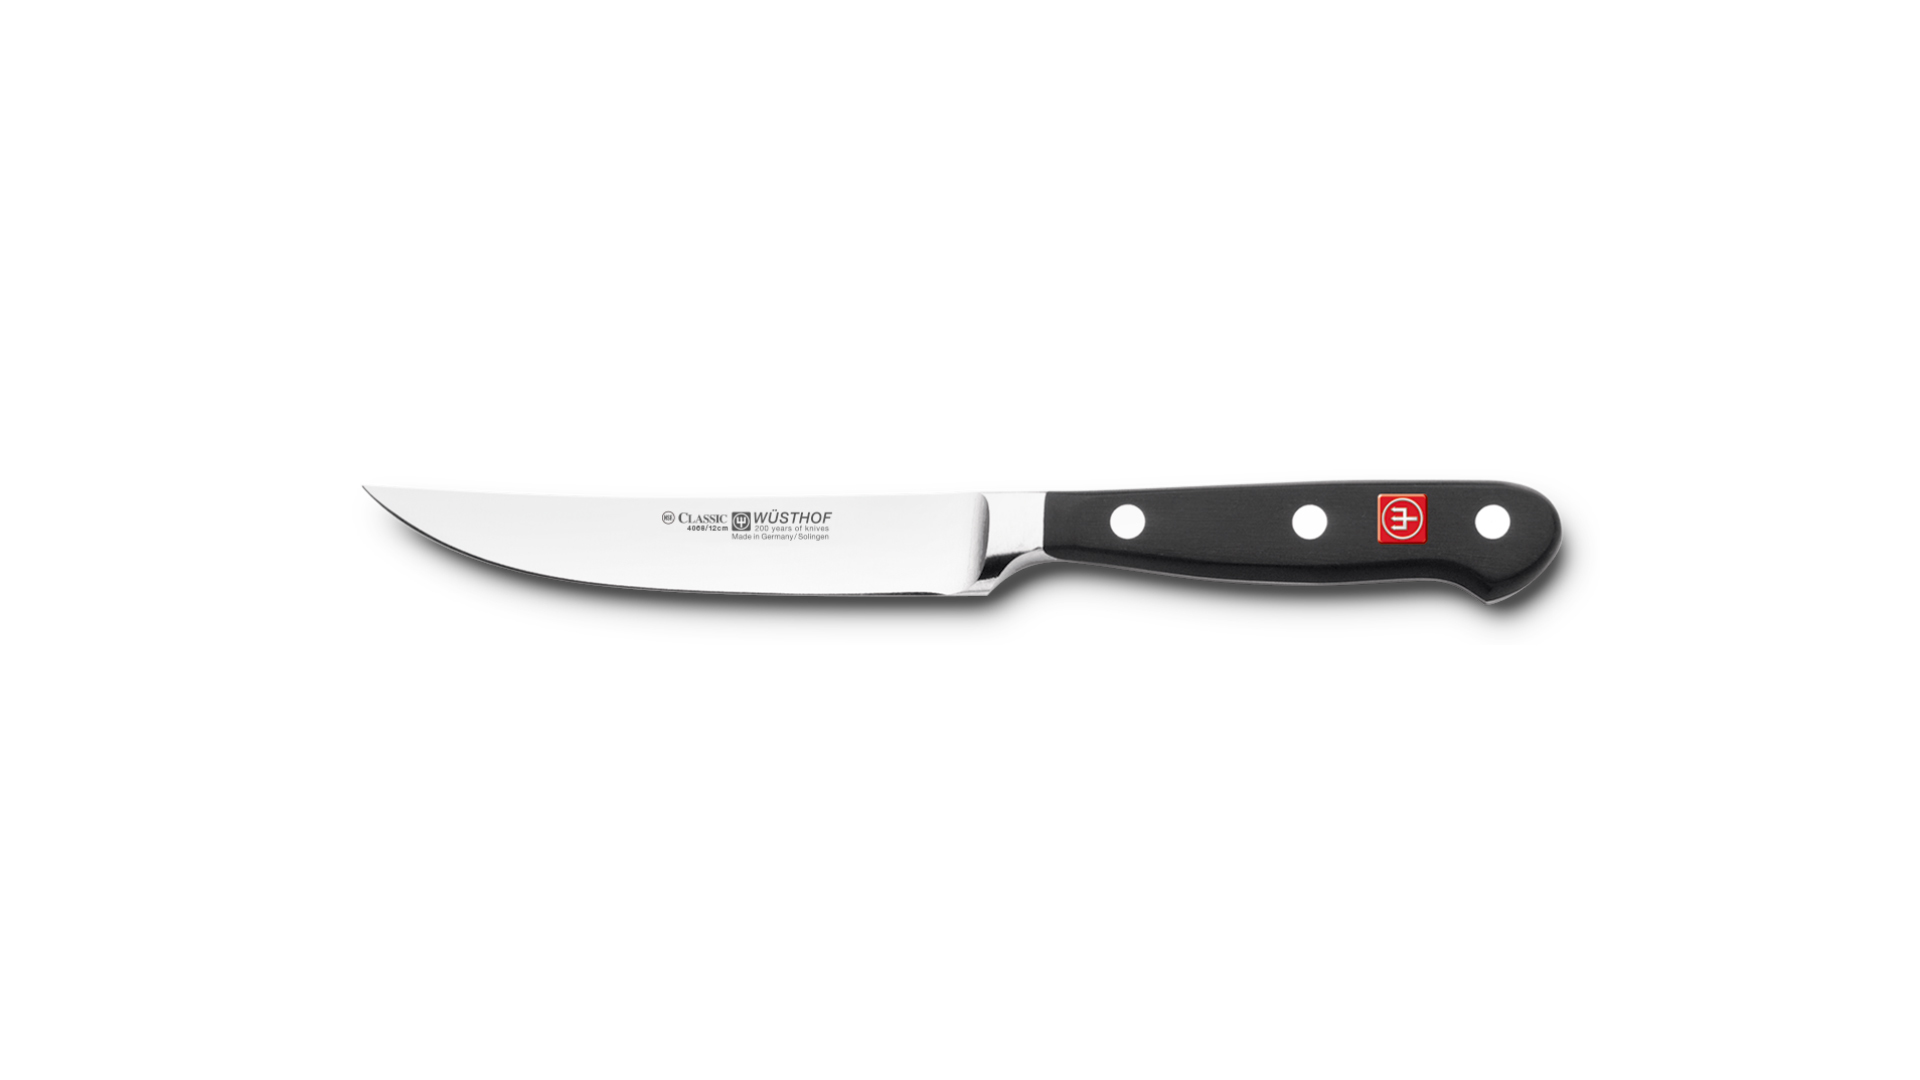 Нож кухонный для стейка Wuesthof Classic 12 см, сталь кованая